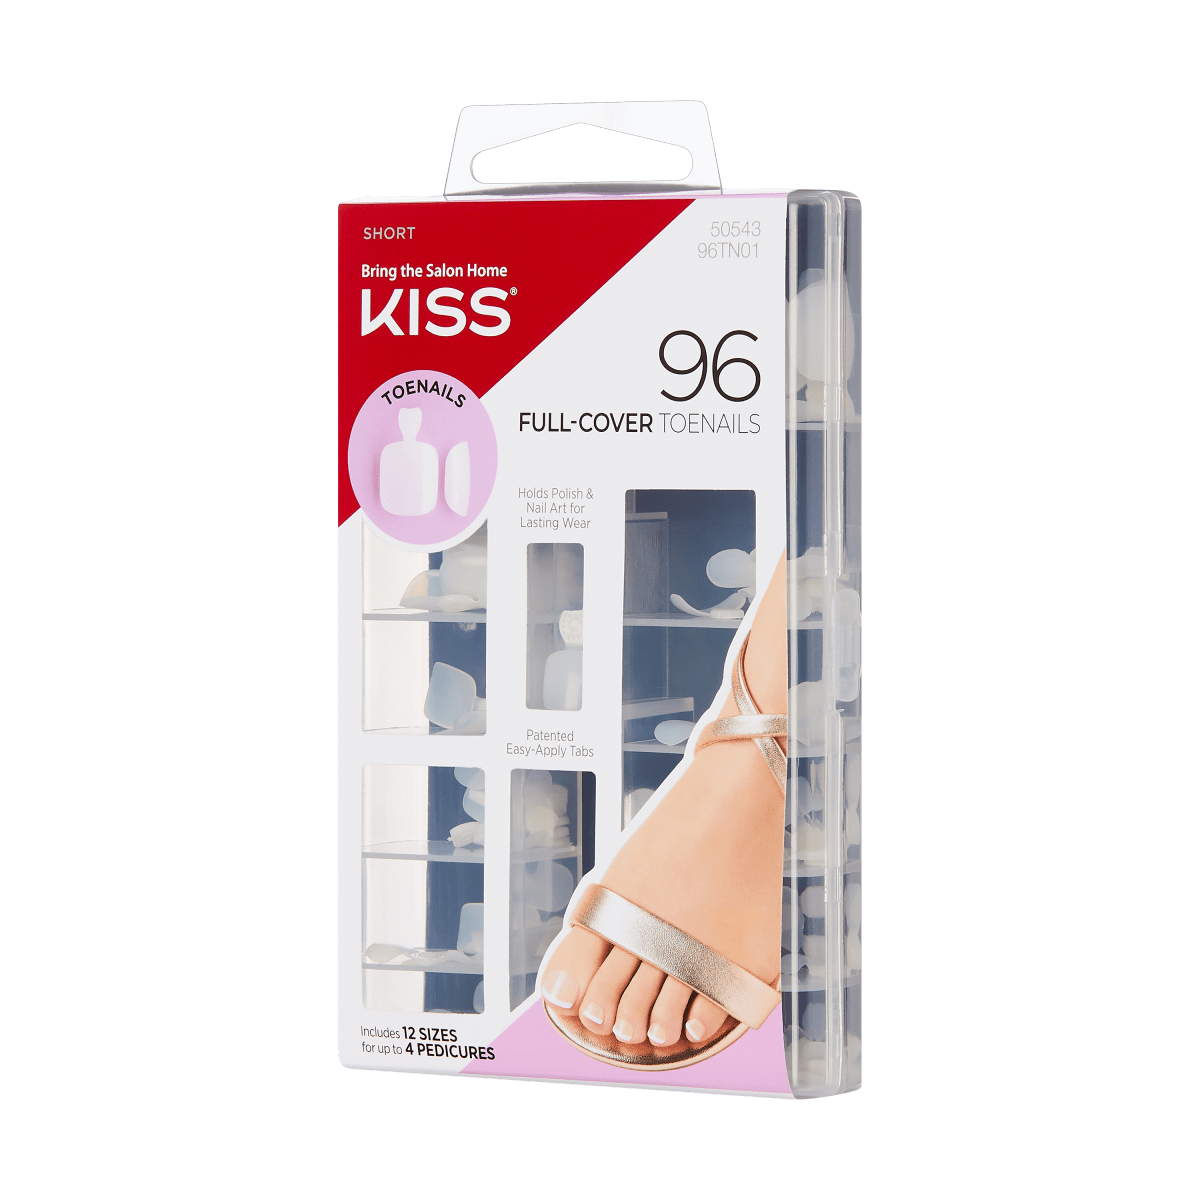 KISS Full-Cover Toenails Kit - Short Length